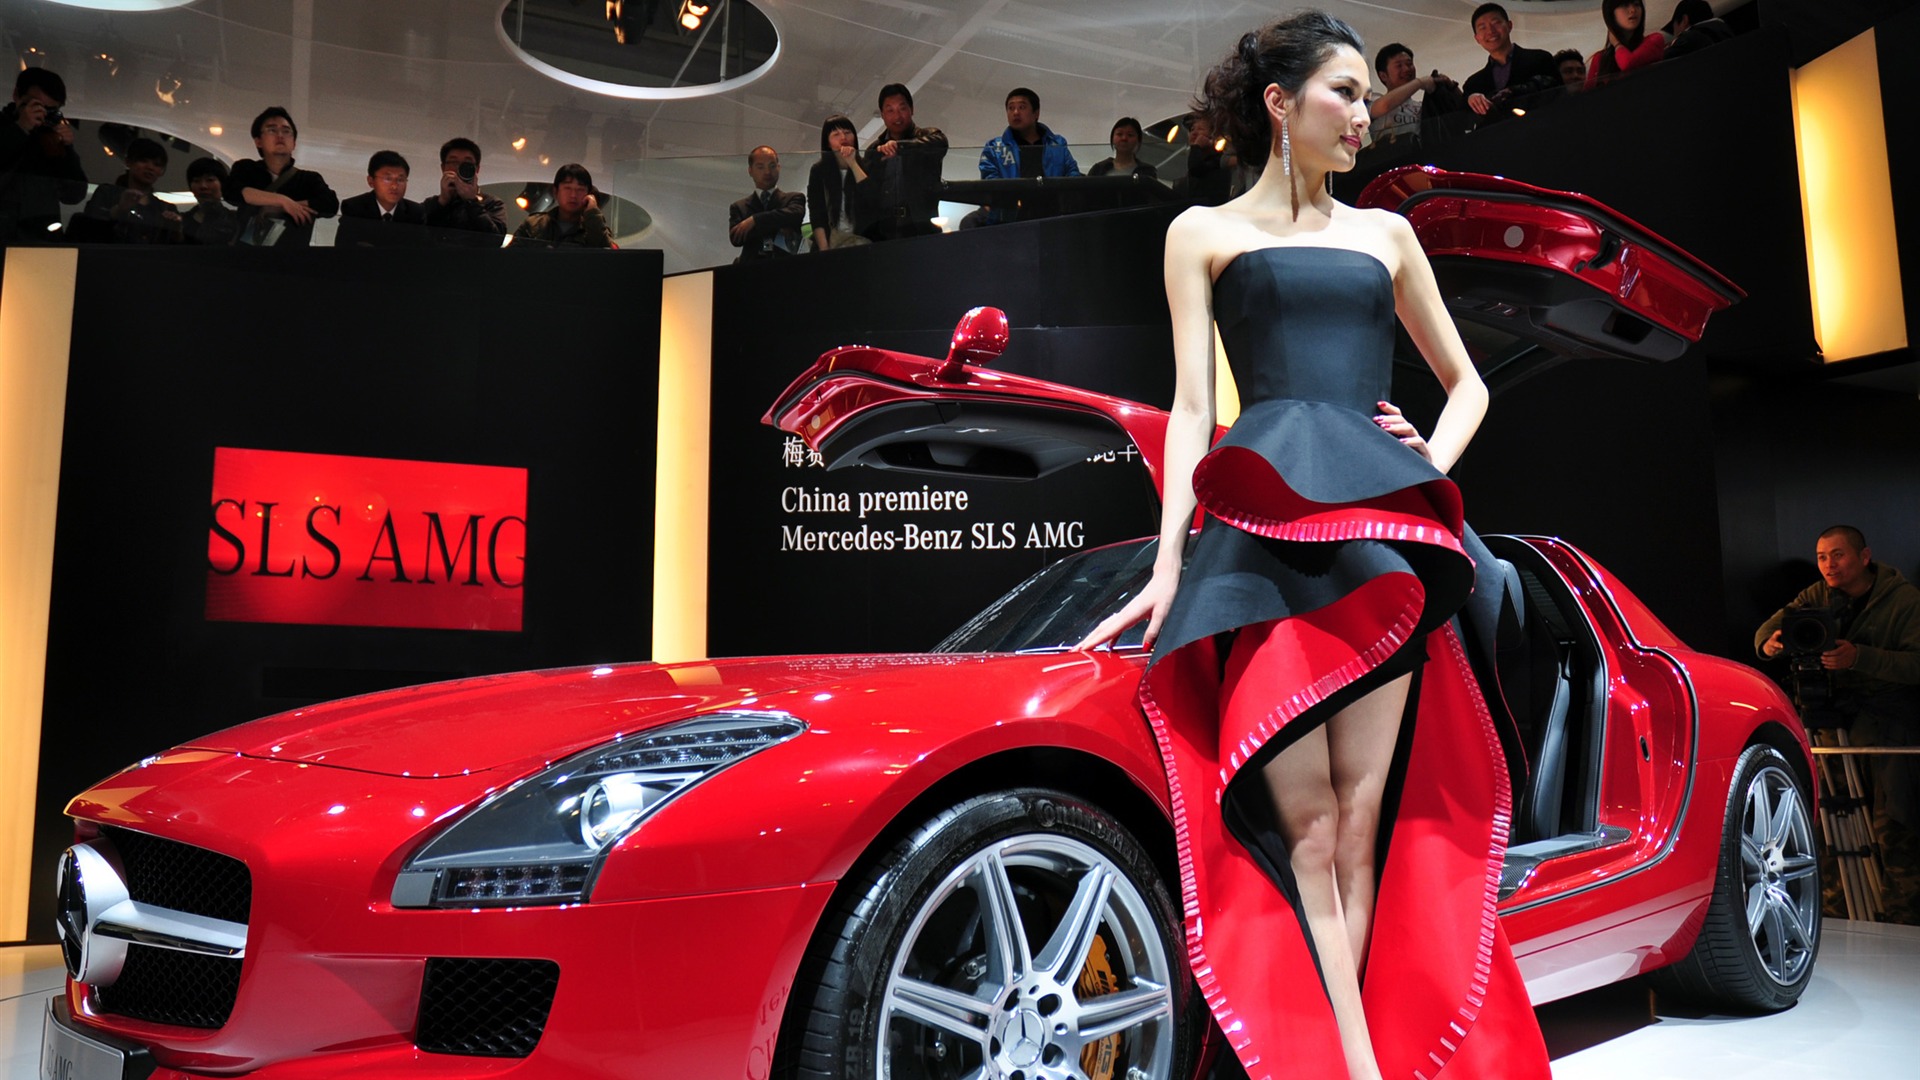 2010 Beijing Auto Show Fahrzeugmodelle Collection (1) #1 - 1920x1080